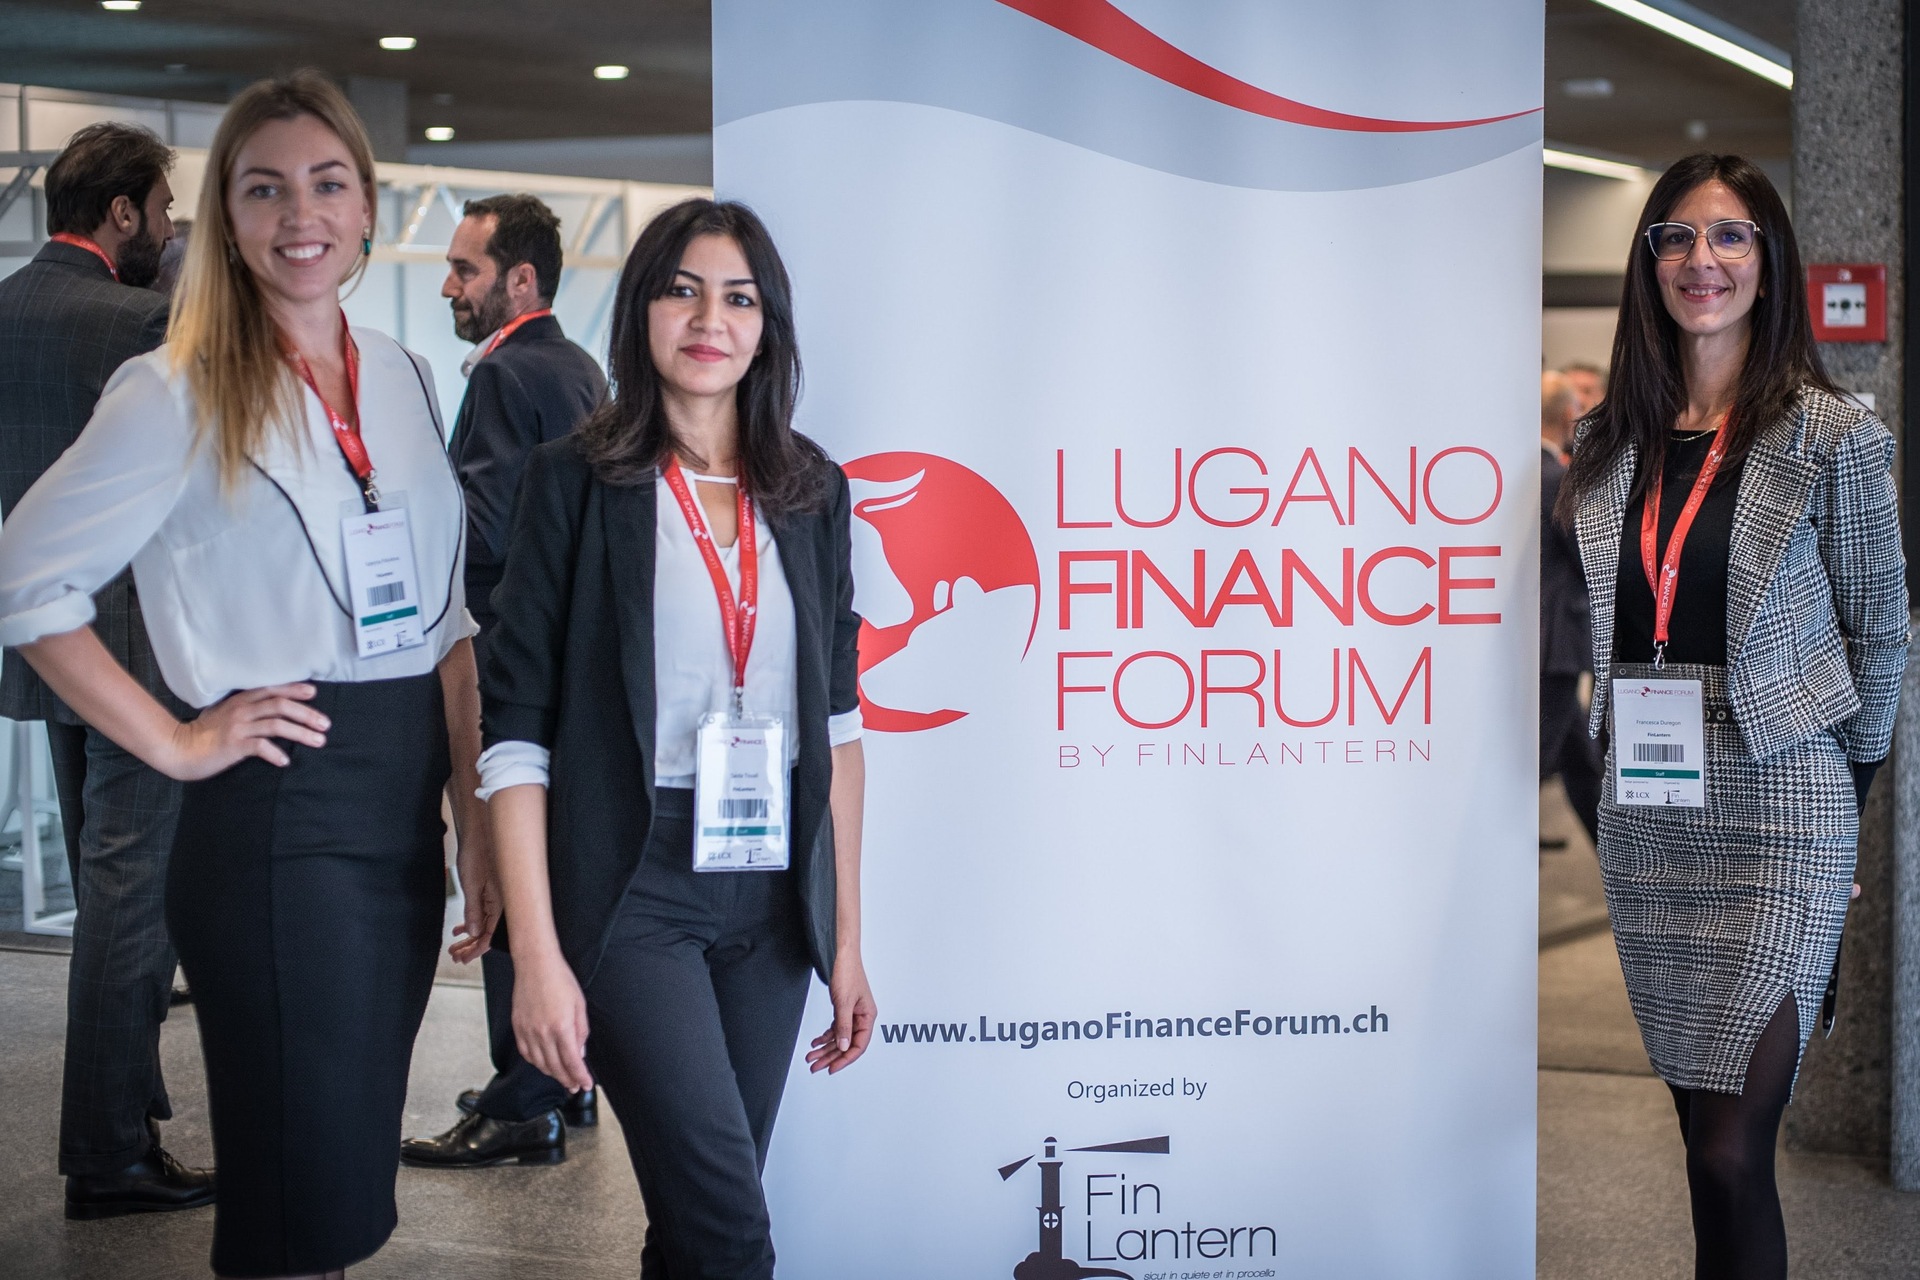 Լուգանոյի ֆինանսական ֆորում. «Լուգանոյի ֆինանսական ֆորումի» 2022 թվականի հրատարակության ցուցահանդեսային տարածքը